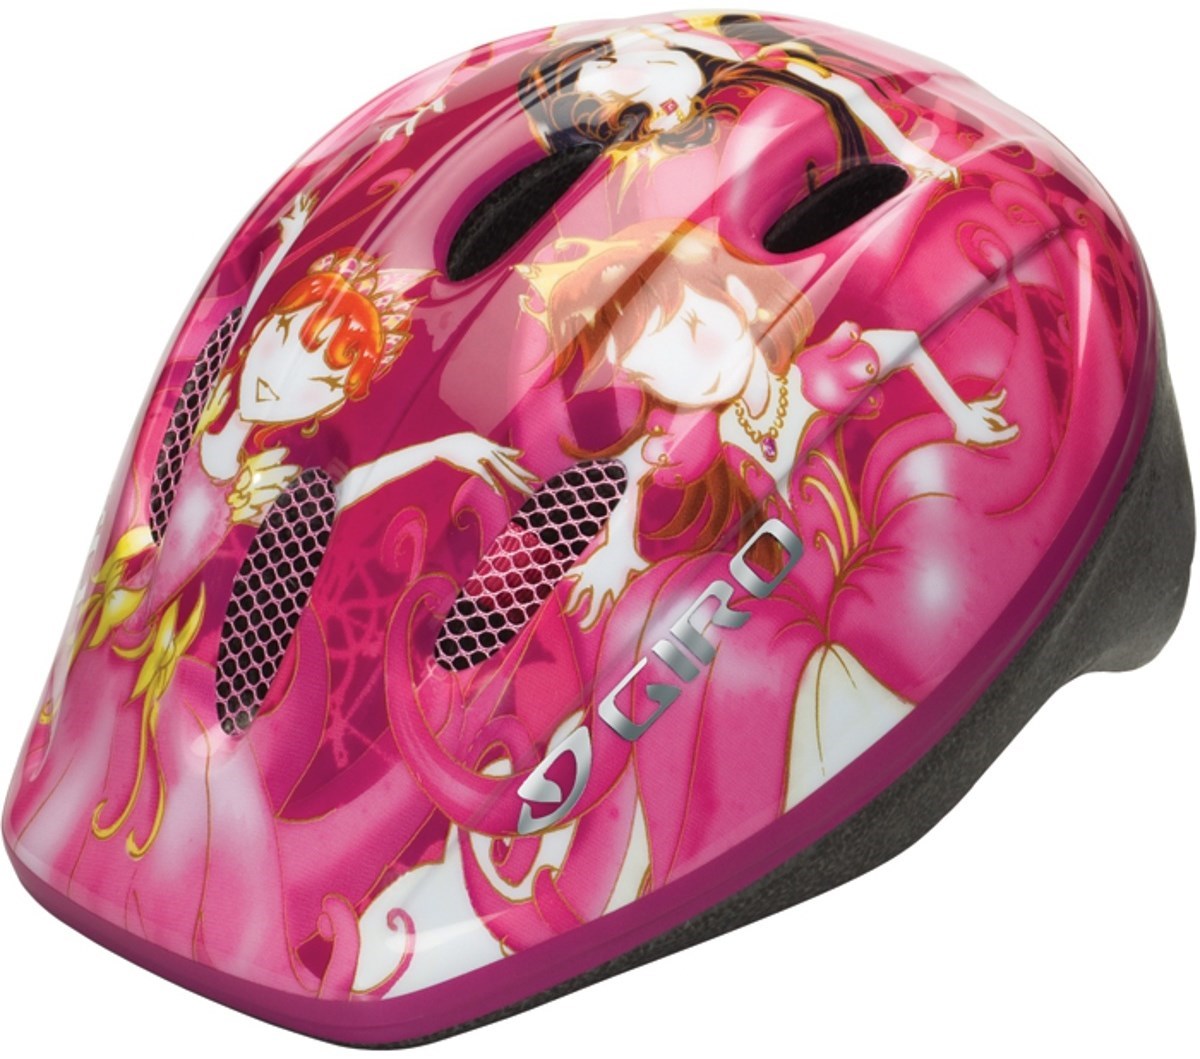 Giro Rodeo 2009 - Kids helmet product image